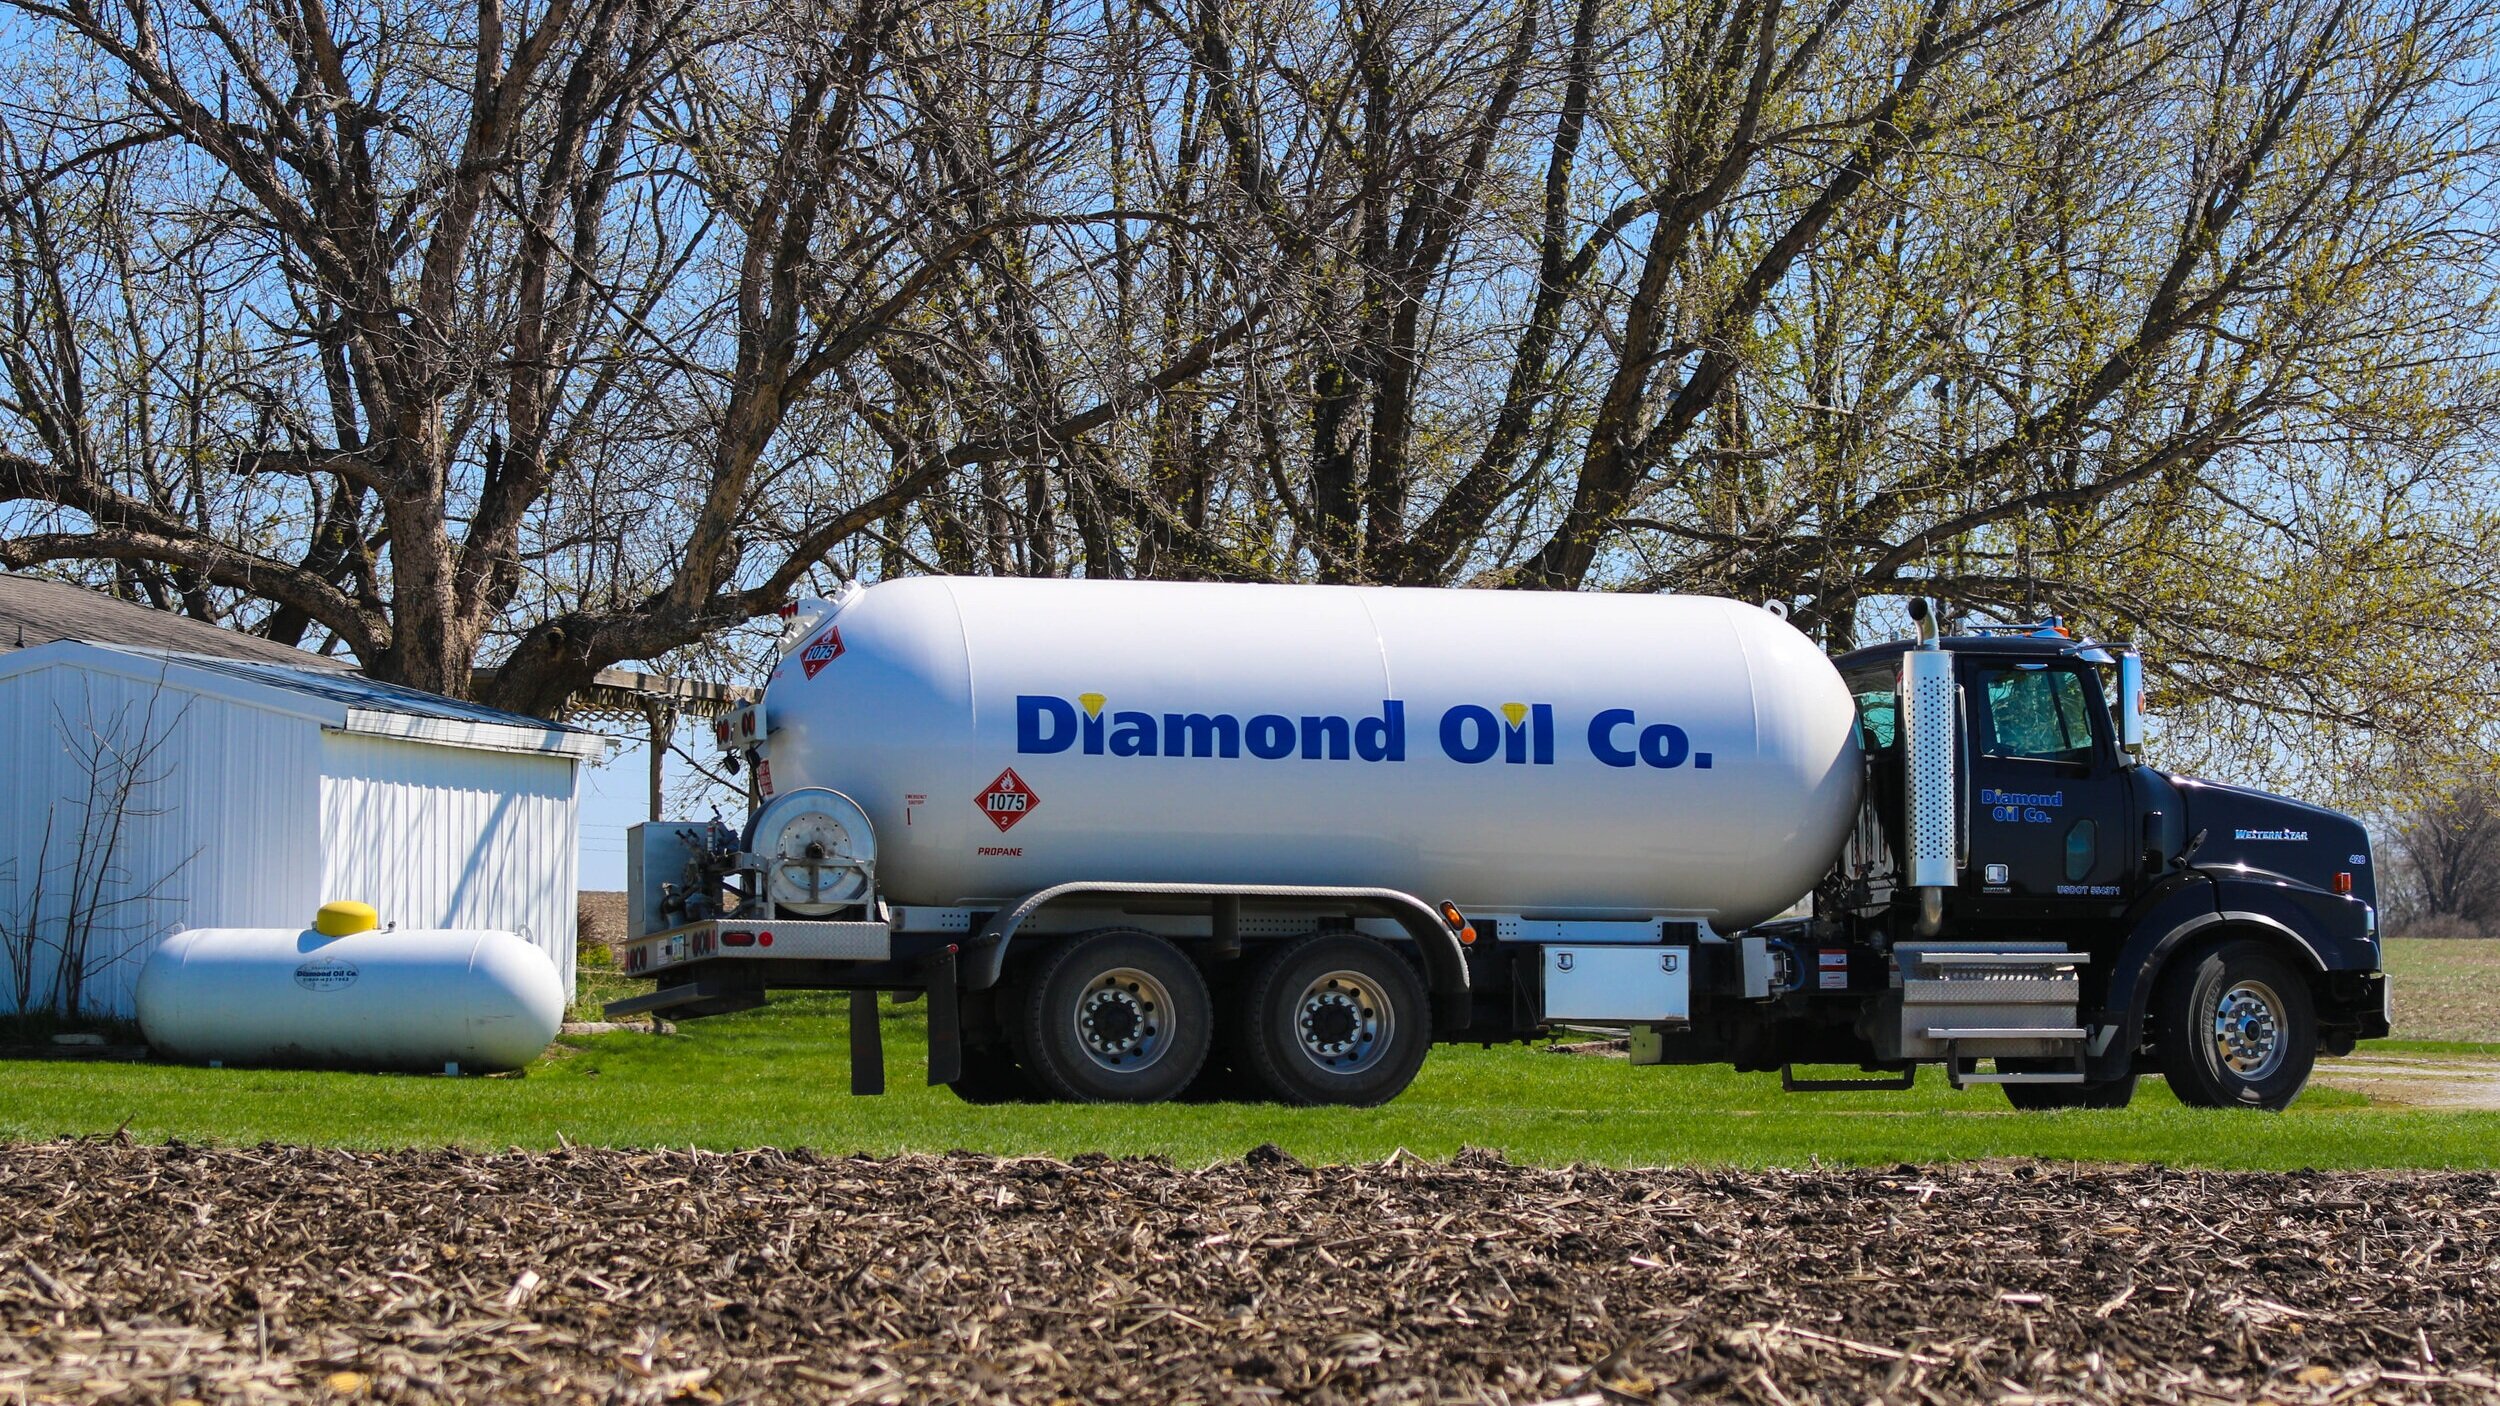 Worauf Sie beim Kauf von Diamond oil achten sollten!